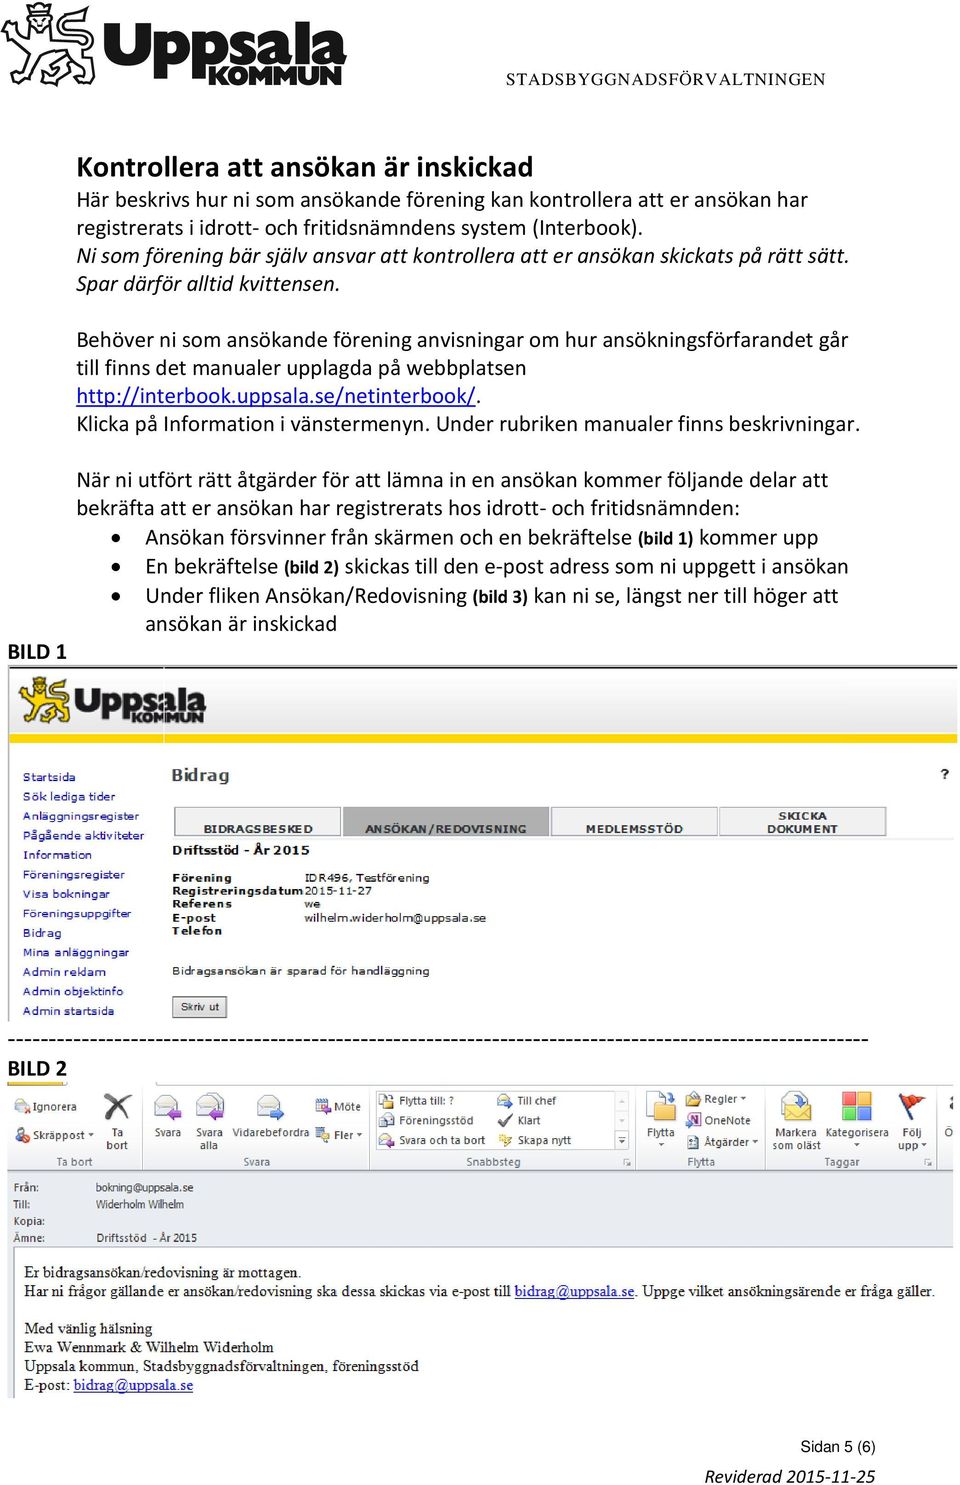 Behöver ni som ansökande förening anvisningar om hur ansökningsförfarandet går till finns det manualer upplagda på webbplatsen http://interbook.uppsala.se/netinterbook/.